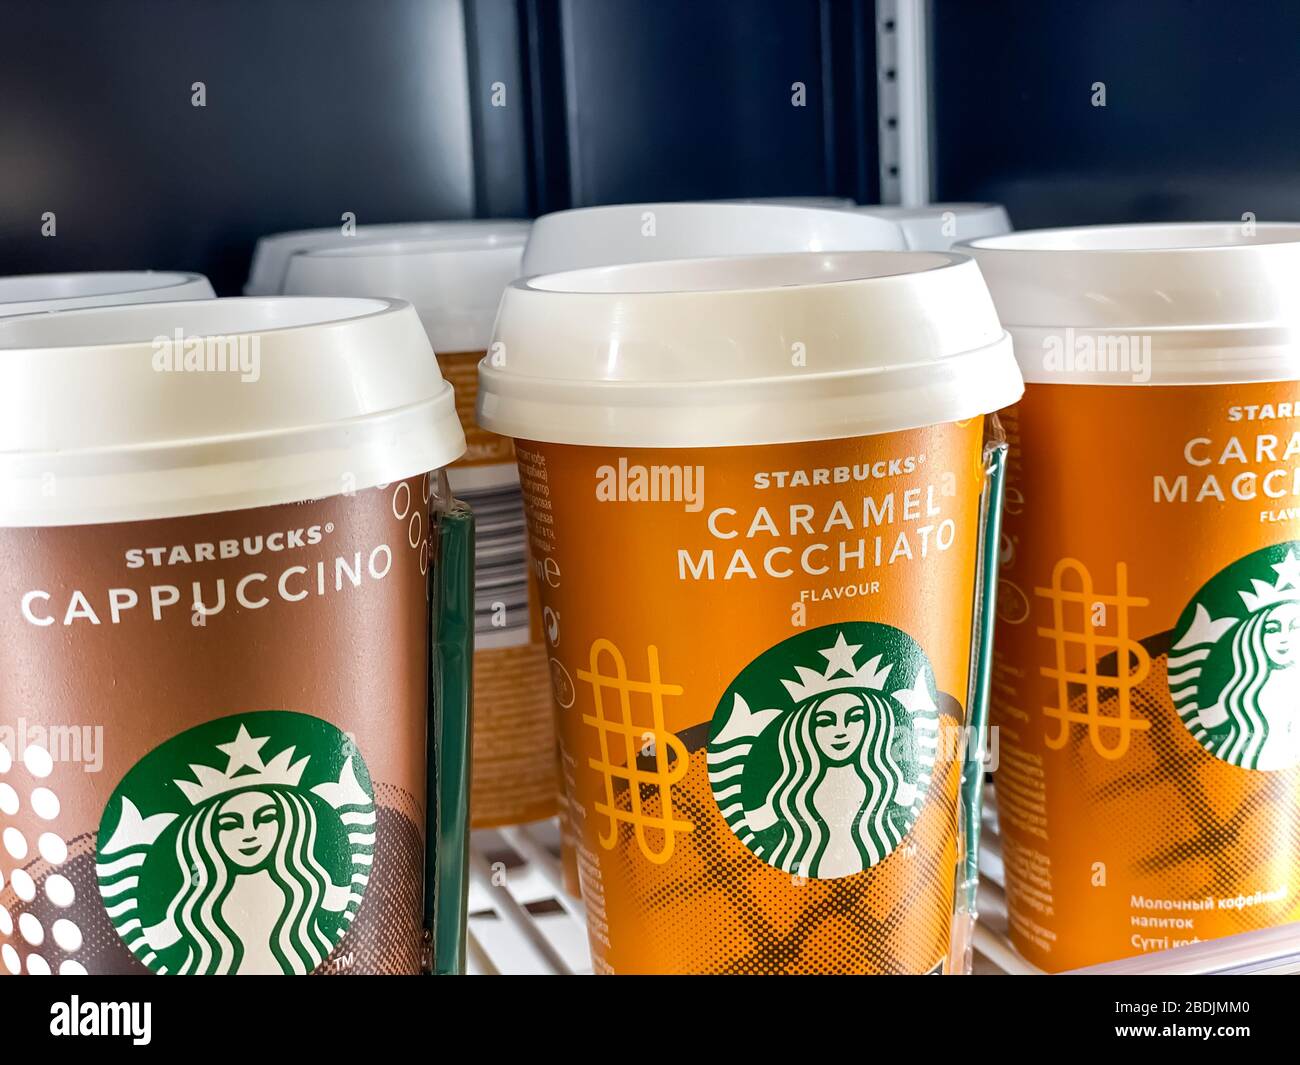 Le tazze da caffè Starbucks sono pronte per essere utilizzate in un frigorifero supermercato. Fotografia mobile. Mosca, Russia - 06 febbraio 2020 Foto Stock